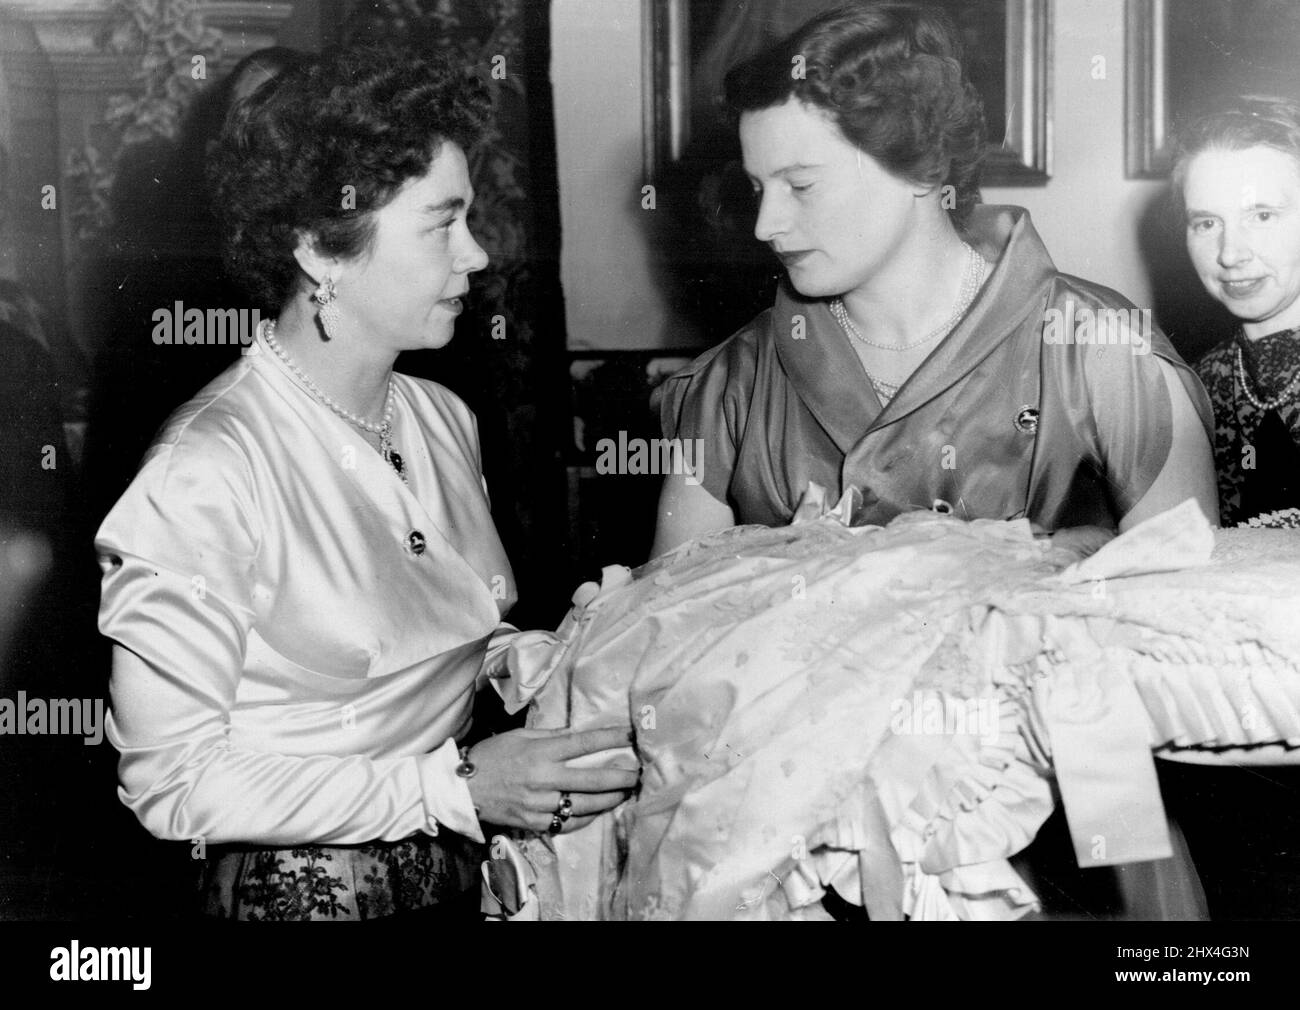 Königin von Griechenland ist Pate - Königin Frederika von Griechenland (links), mit Prinzessin Ortrud von Sonderburg-Gluecksburg, die ihre sechswöchige Tochter, Prinzessin Frederika Louise, in der Hand hält, Der auf Schloss Marienburg, Residenz des Herzogs von Braunschweig, des Vaters der Königin Frederika und des Fürsten Ernst August von Hannover, Vater des Kindes, getauft wurde. Königin Frederika, die im Herbst 1951 bei der Hochzeit ihres Bruders Prinz Ernst August mit Prinzessin Ortrud die letzte in Deutschland war, war die Patin des Kindes. 8. Januar 1953. Stockfoto